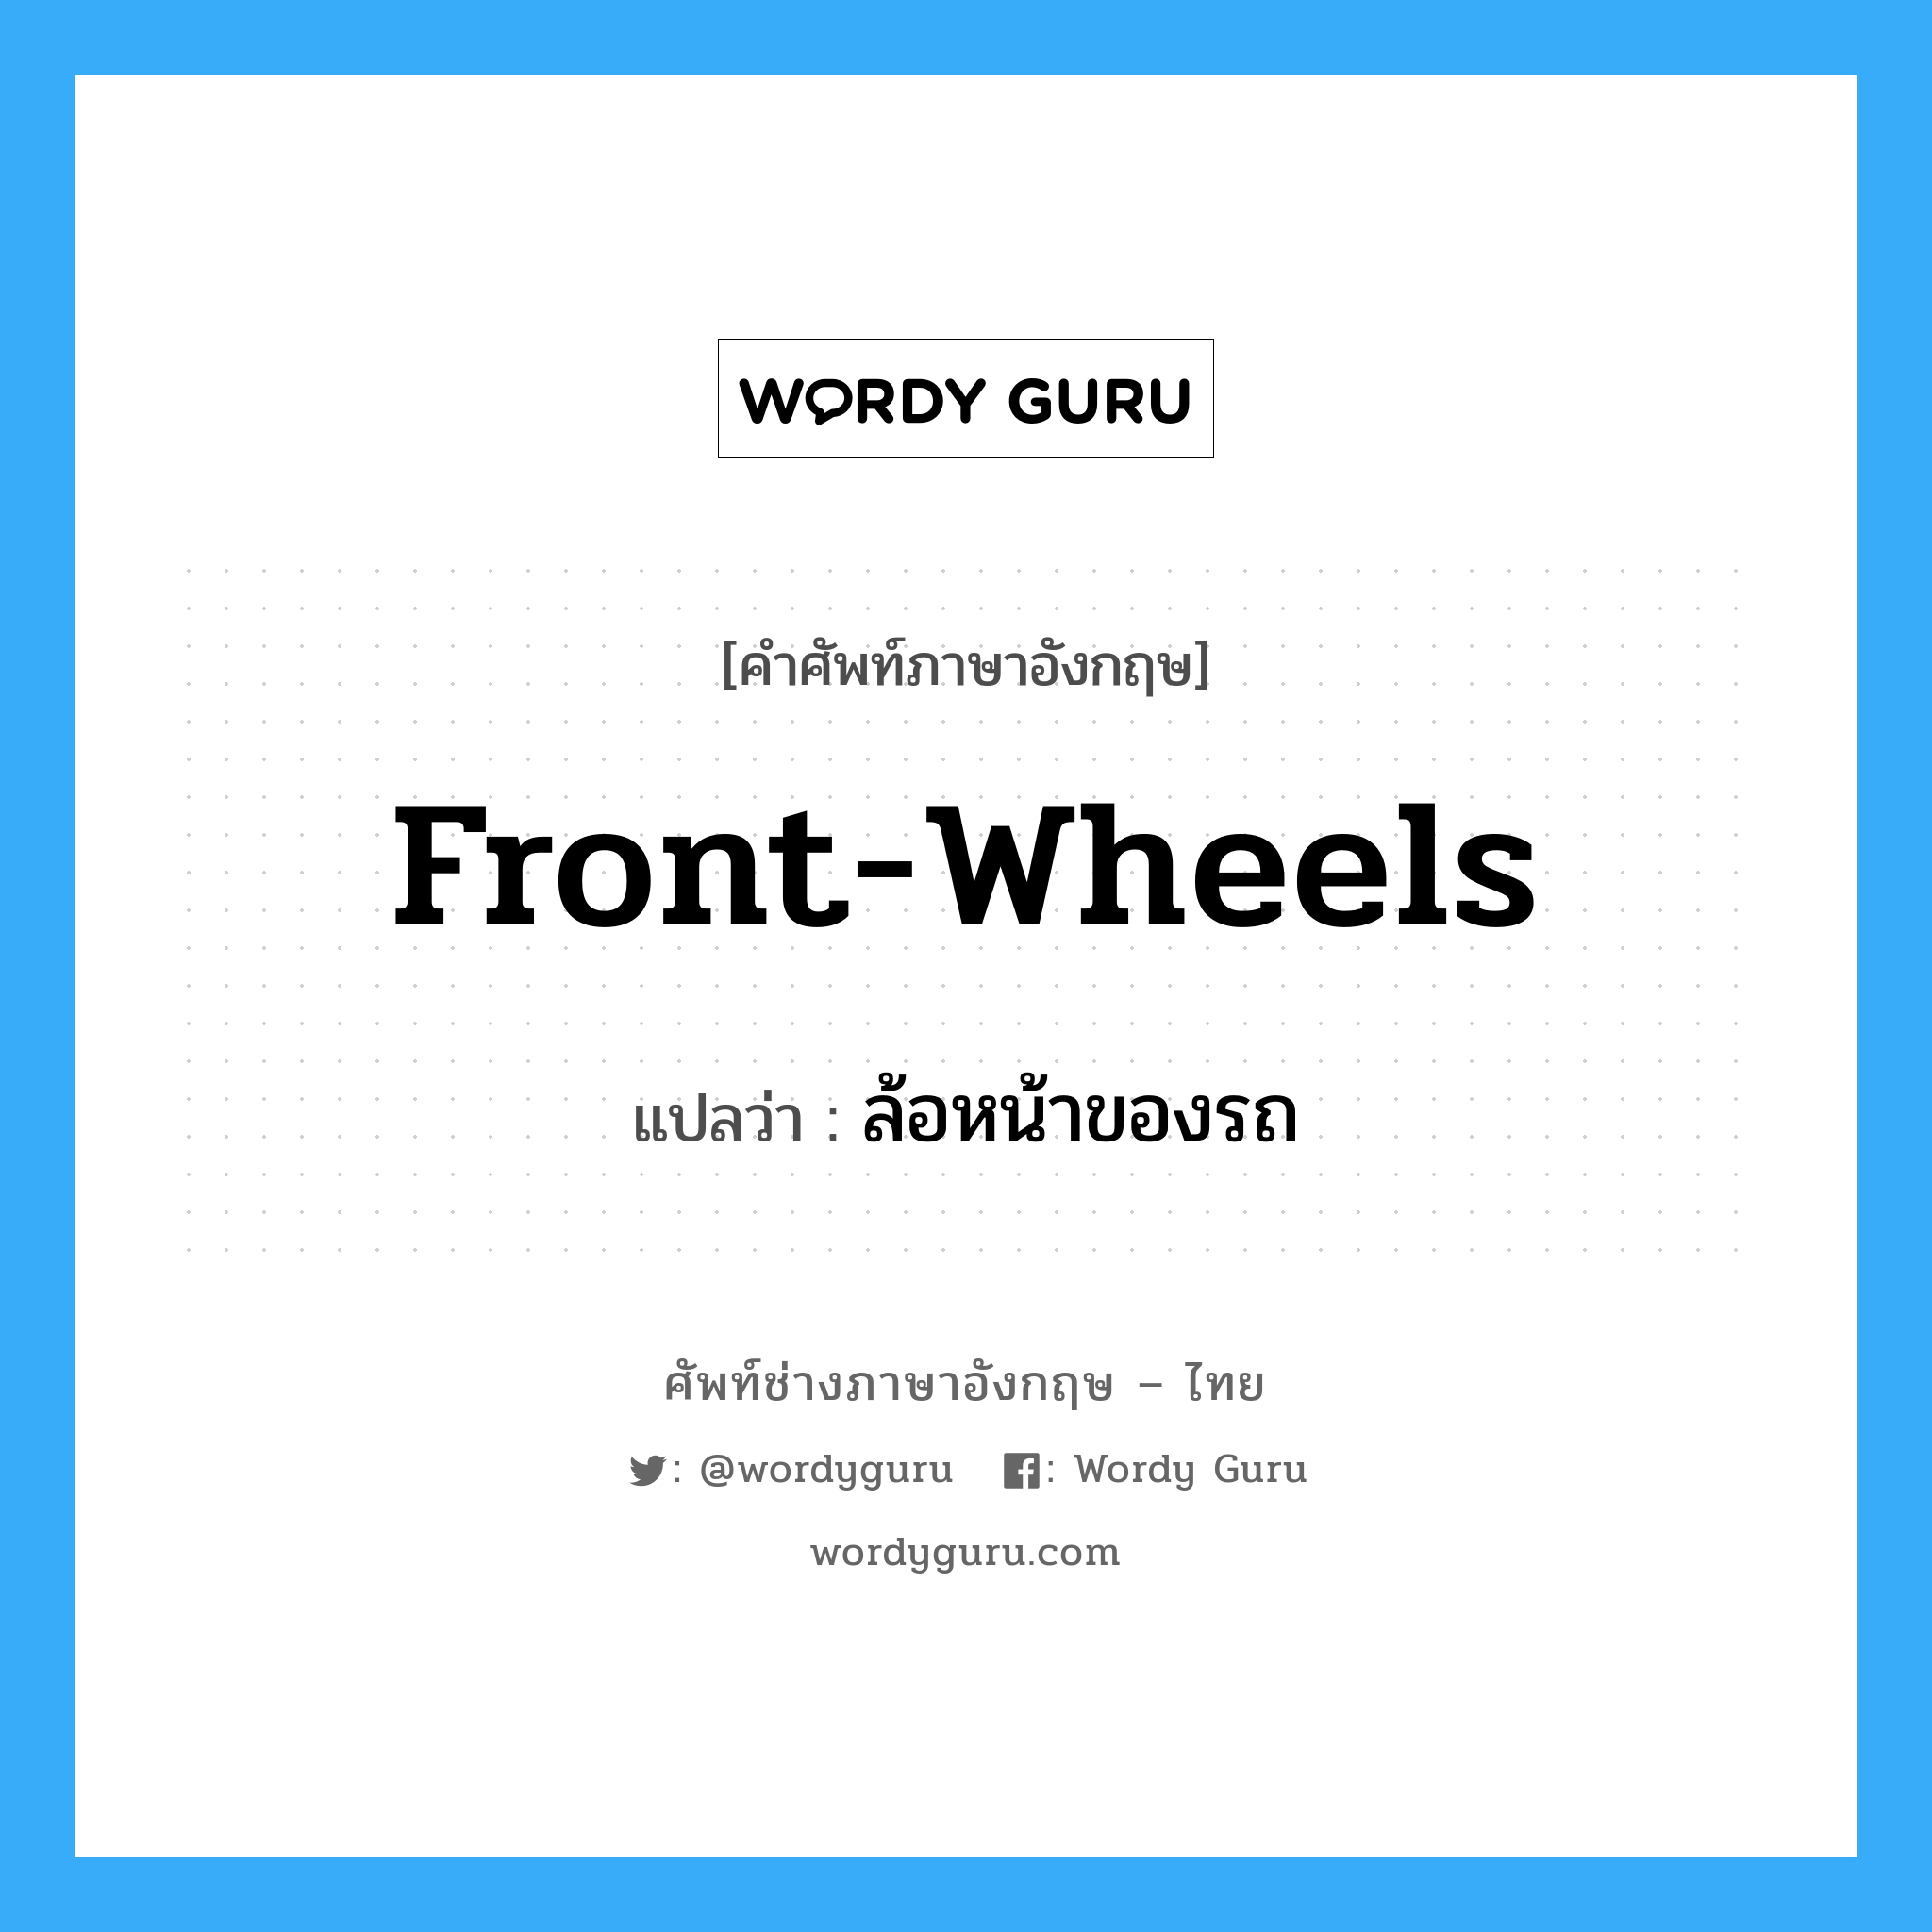 front-wheels แปลว่า?, คำศัพท์ช่างภาษาอังกฤษ - ไทย front-wheels คำศัพท์ภาษาอังกฤษ front-wheels แปลว่า ล้อหน้าของรถ